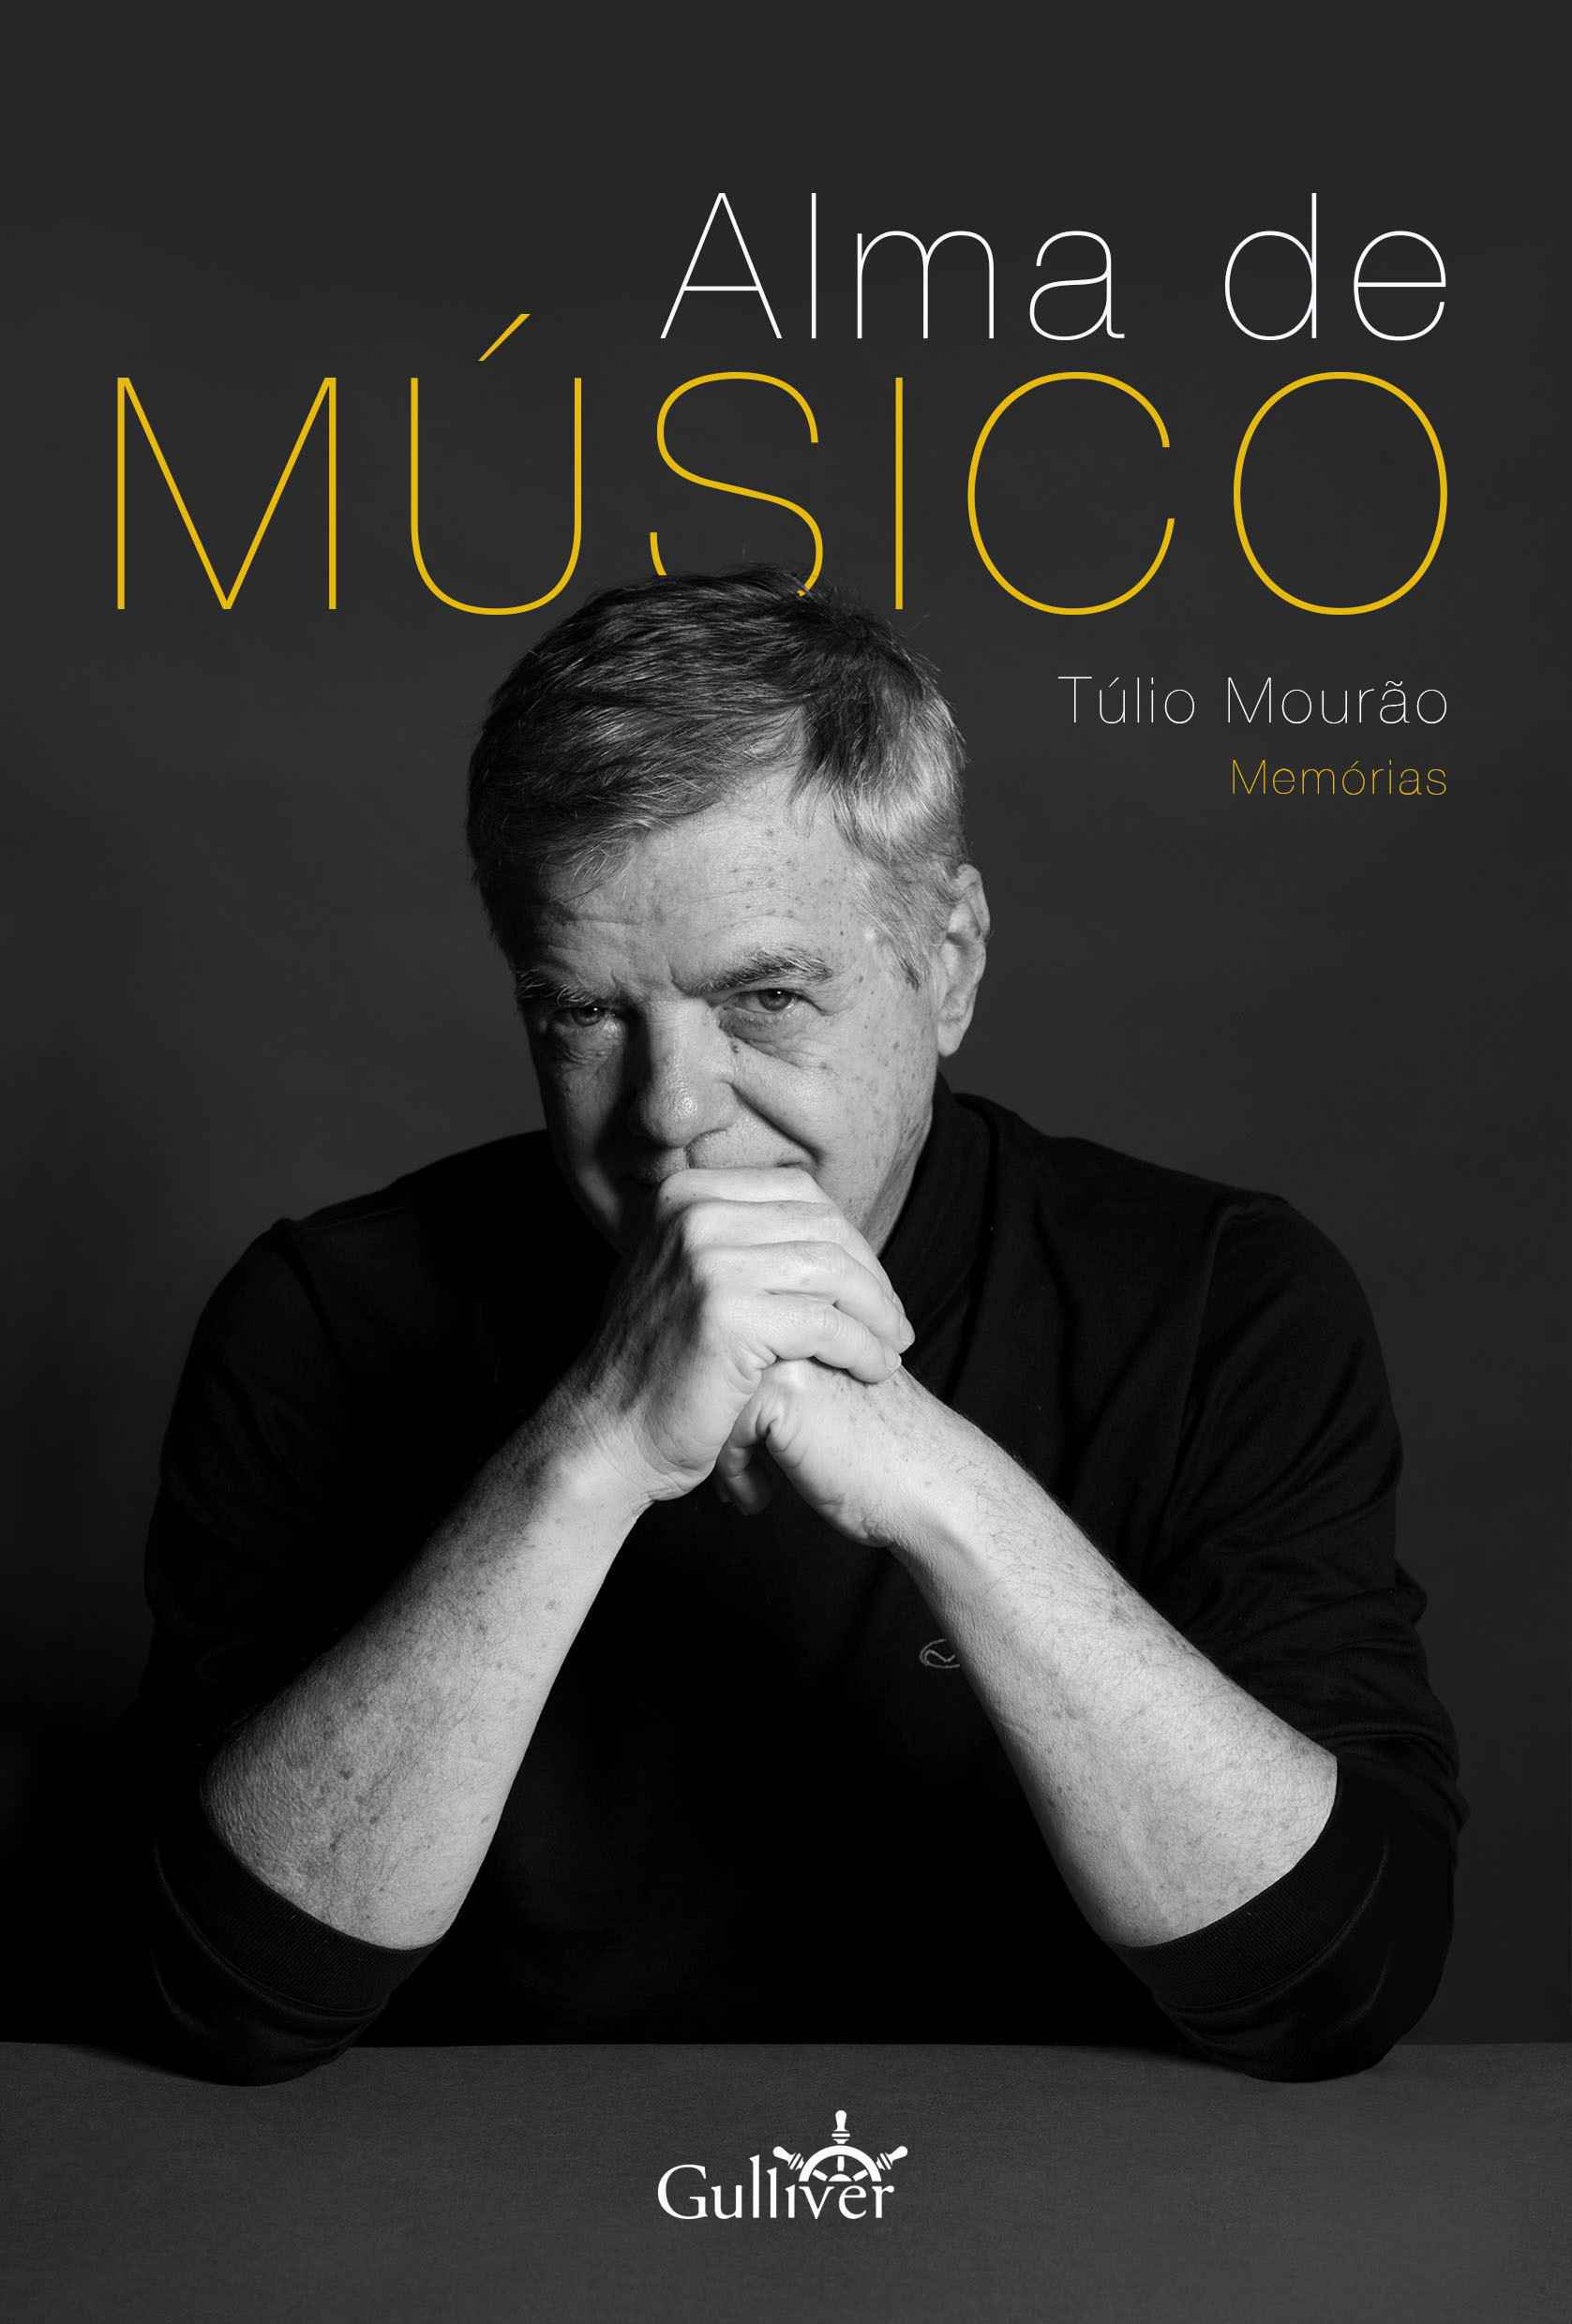 Túlio Mourão publica, em livro, memórias de seus 50 anos de carreira